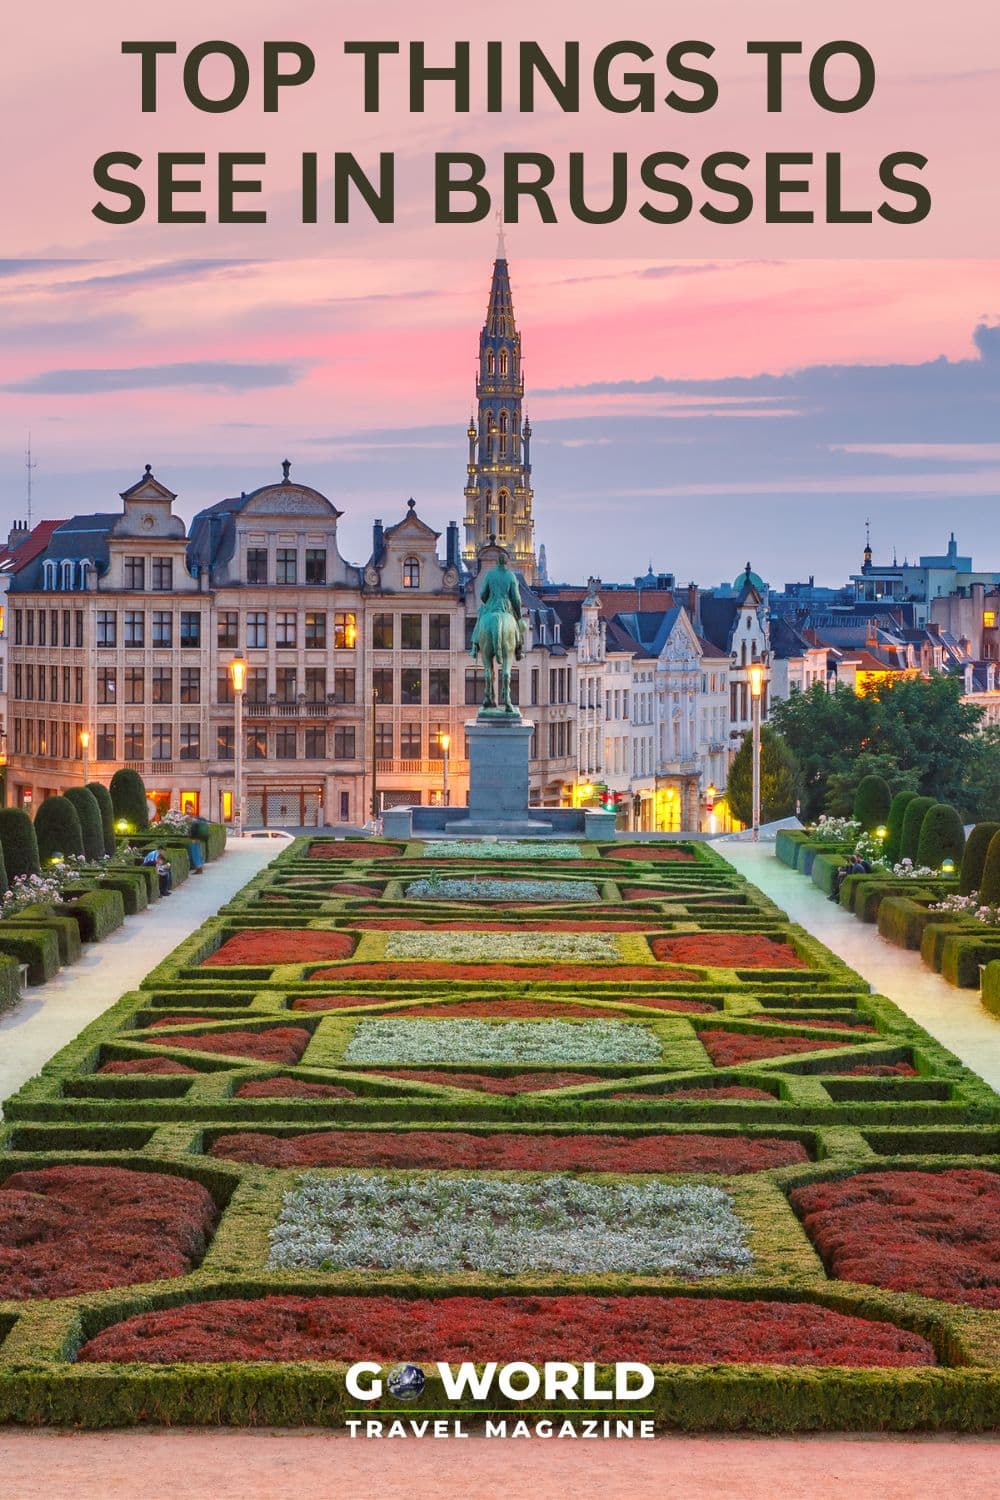  بروكسل هي مقر أوروبا وتشتهر بالبيرة والشوكولاتة و هندسة معمارية مذهلة. إليك 5 أشياء يجب رؤيتها في بروكسل. #Brussels # أشياء يجب القيام بها في بروكسل 